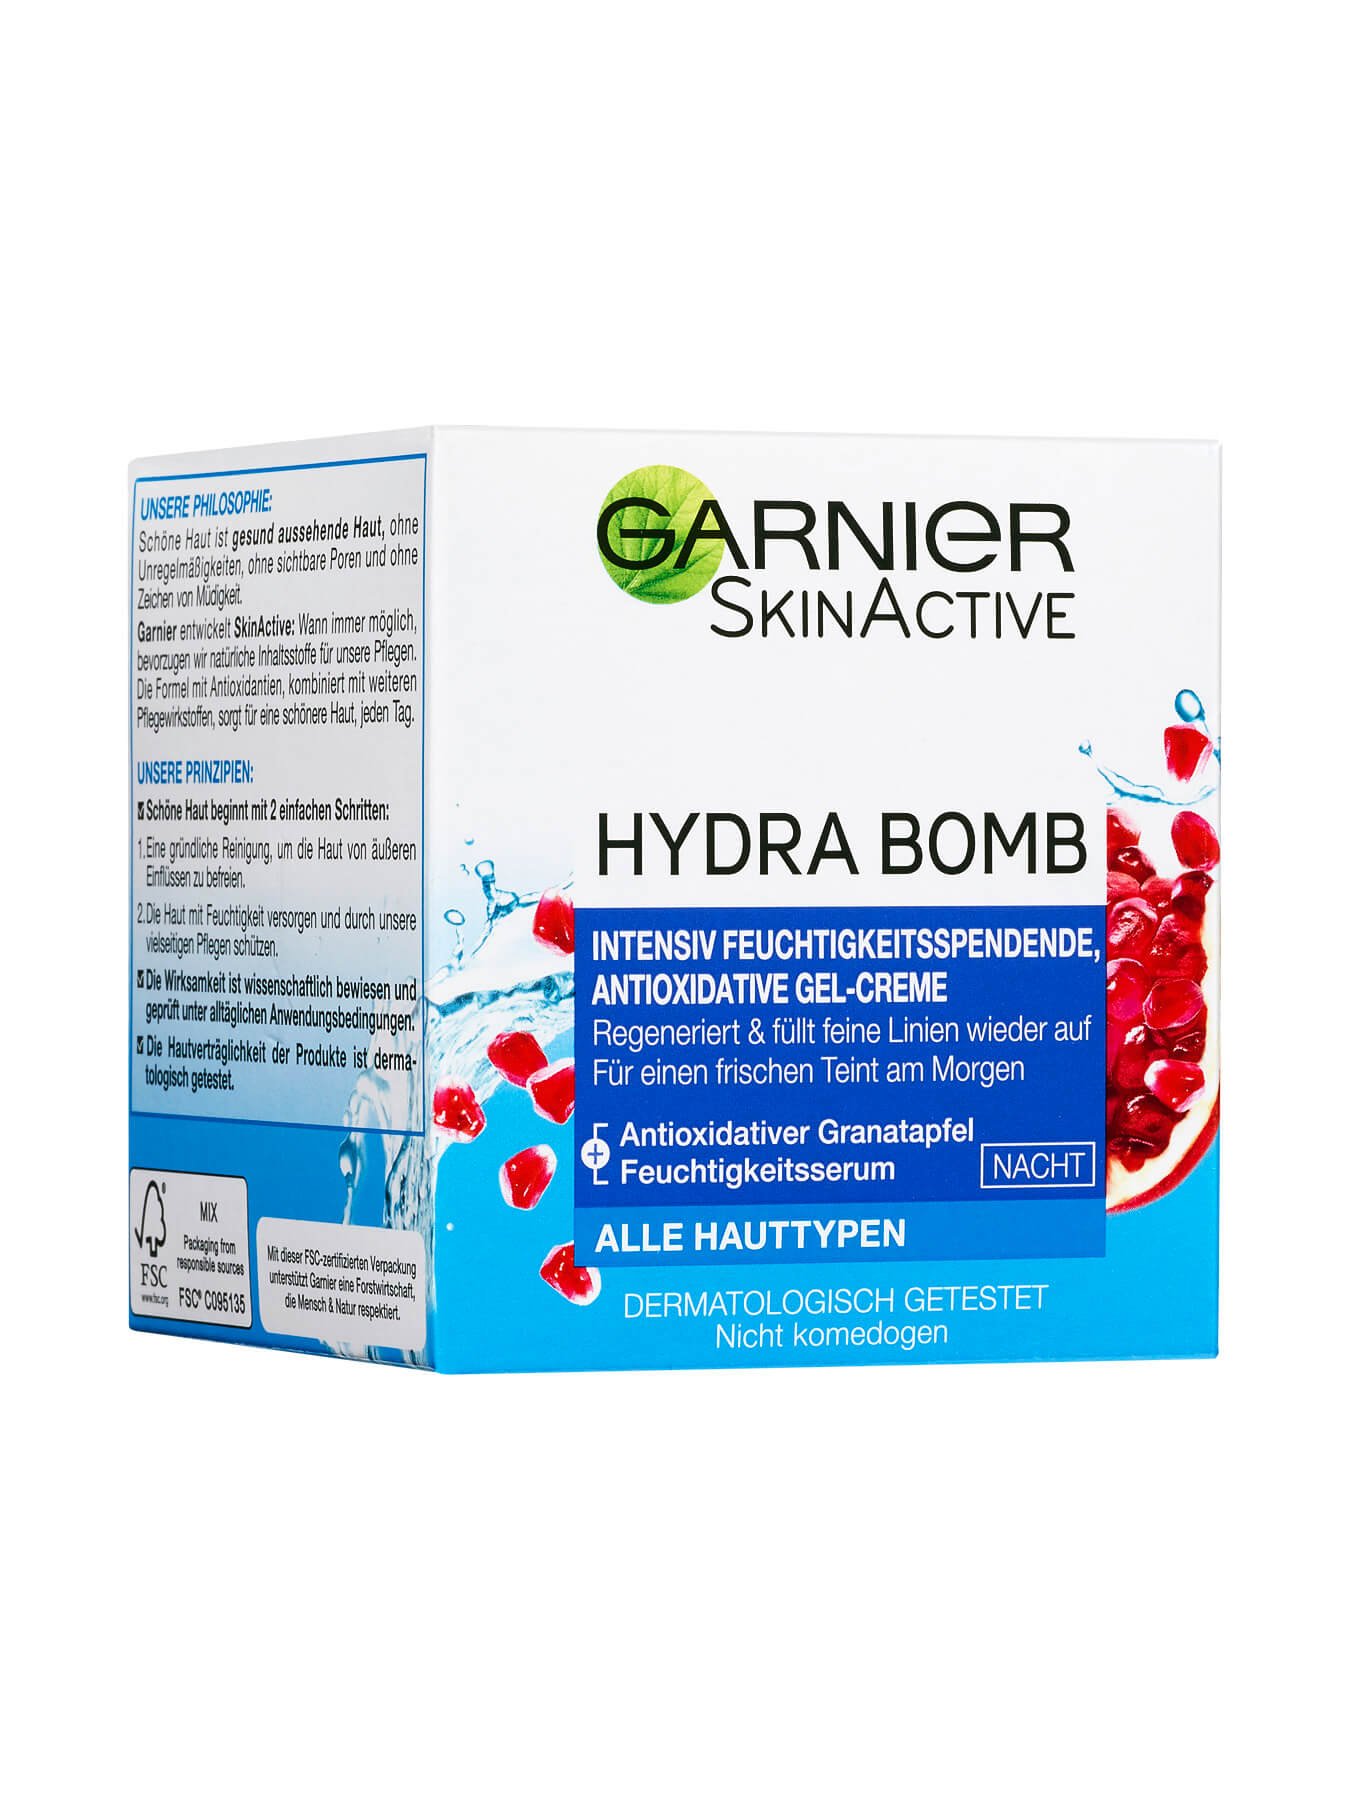 Hydra Bomb Freuchtigkeitsspendende Antioxidative Gel Creme Nacht